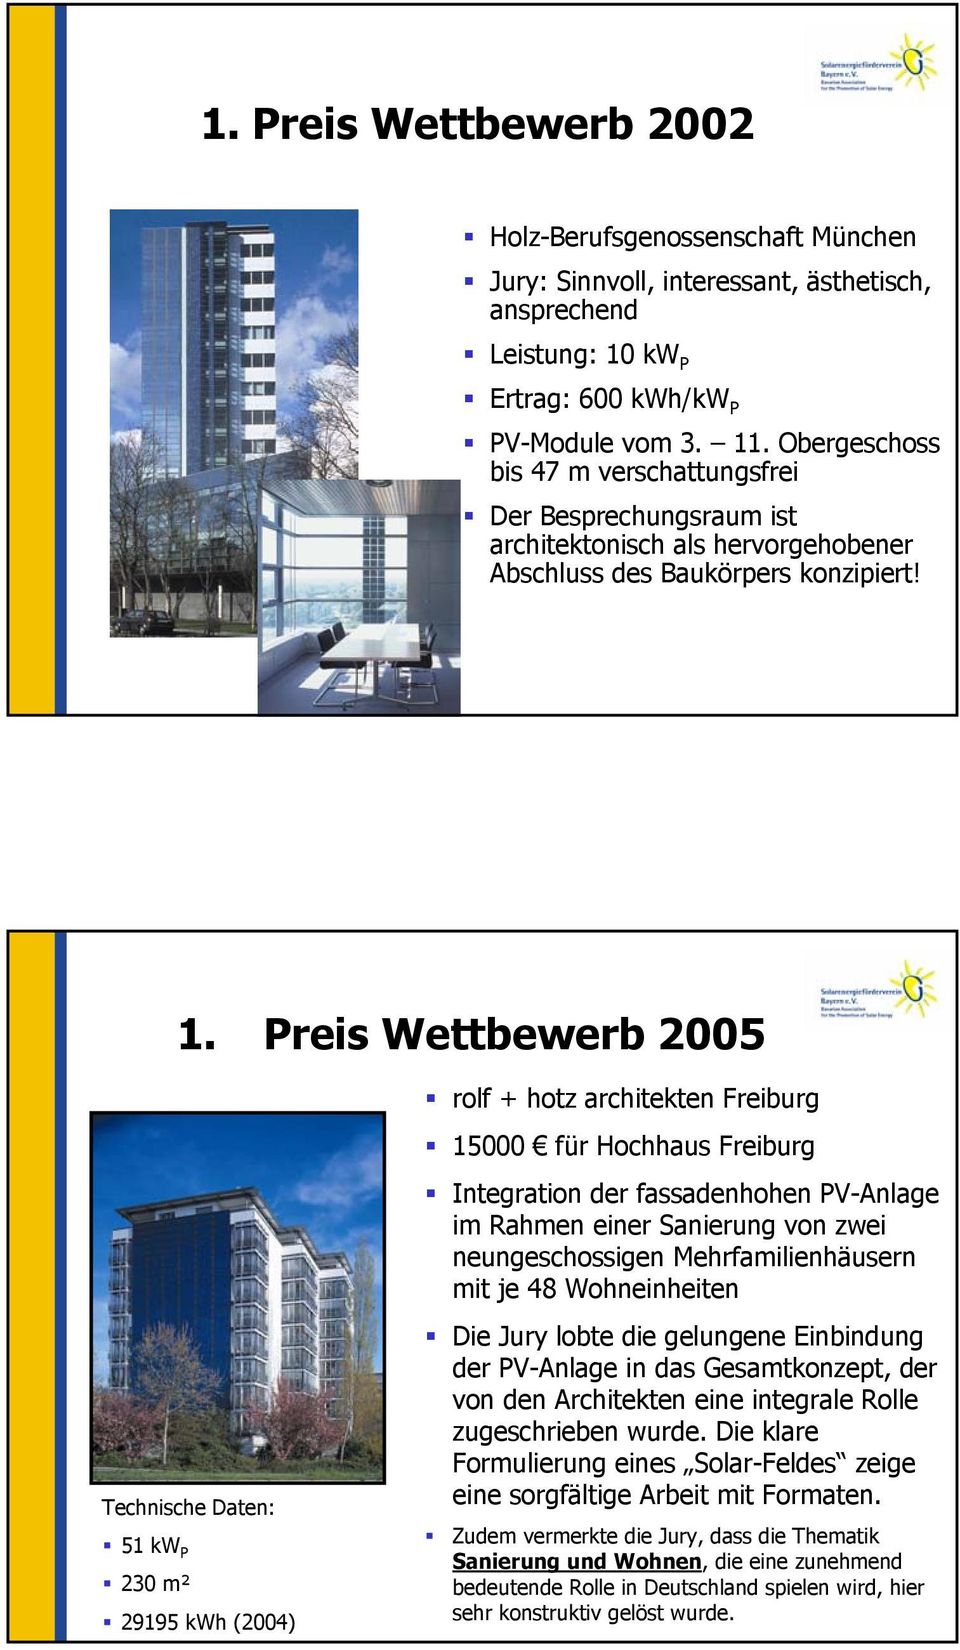 Preis Wettbewerb 2005 rolf + hotz architekten Freiburg 15000 für Hochhaus Freiburg Integration der fassadenhohen PV-Anlage im Rahmen einer Sanierung von zwei neungeschossigen Mehrfamilienhäusern mit